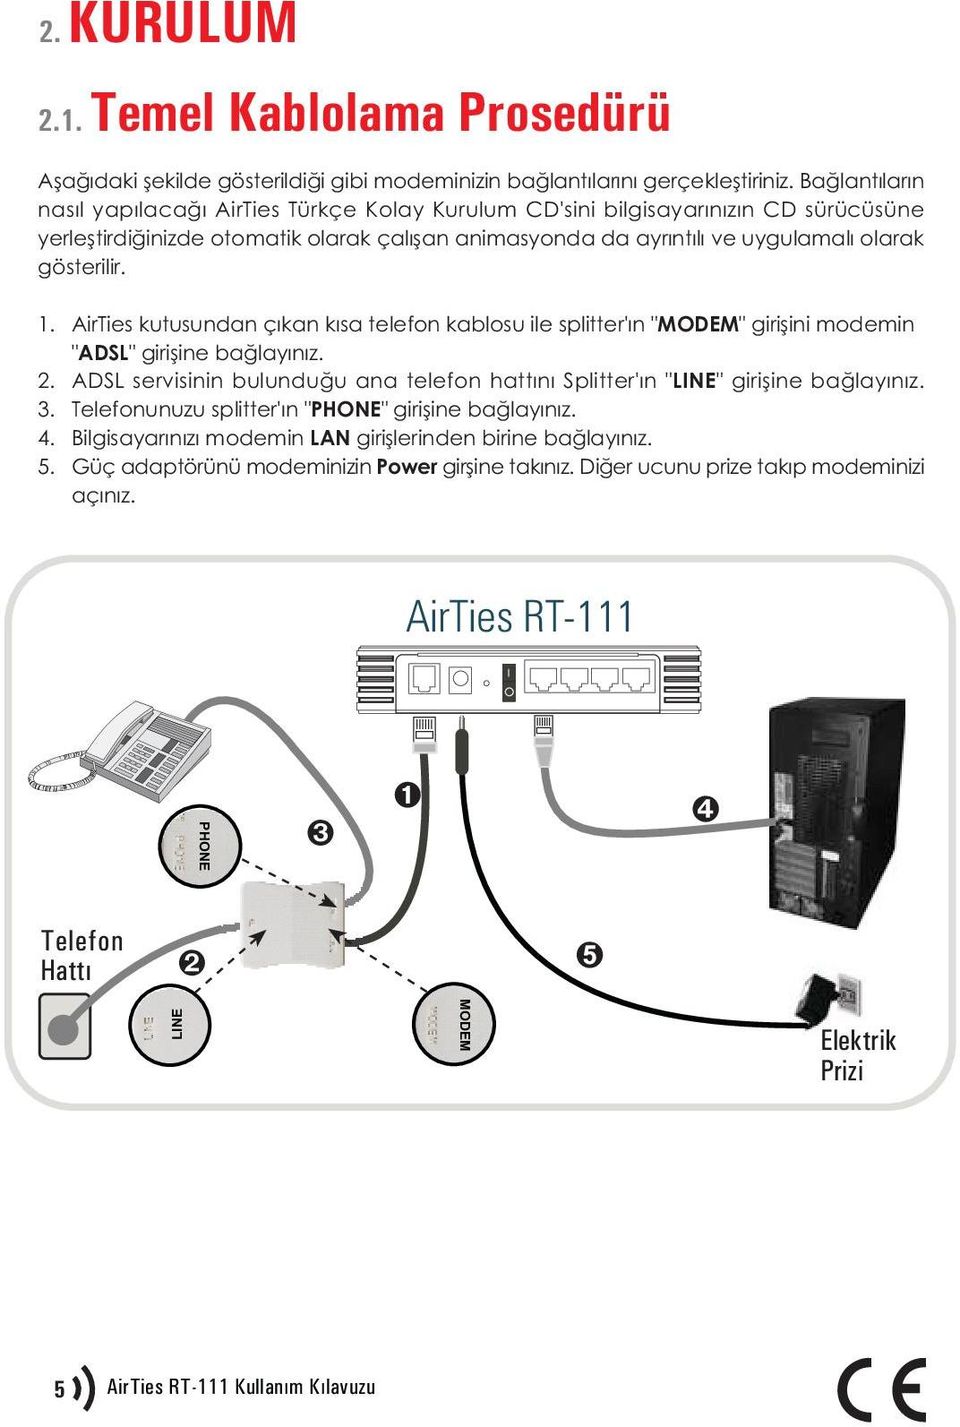 1. AirTies kutusundan çýkan kýsa telefon kablosu ile splitter'ýn "MODEM" giriþini modemin "ADSL" giriþine baðlayýnýz. 2.